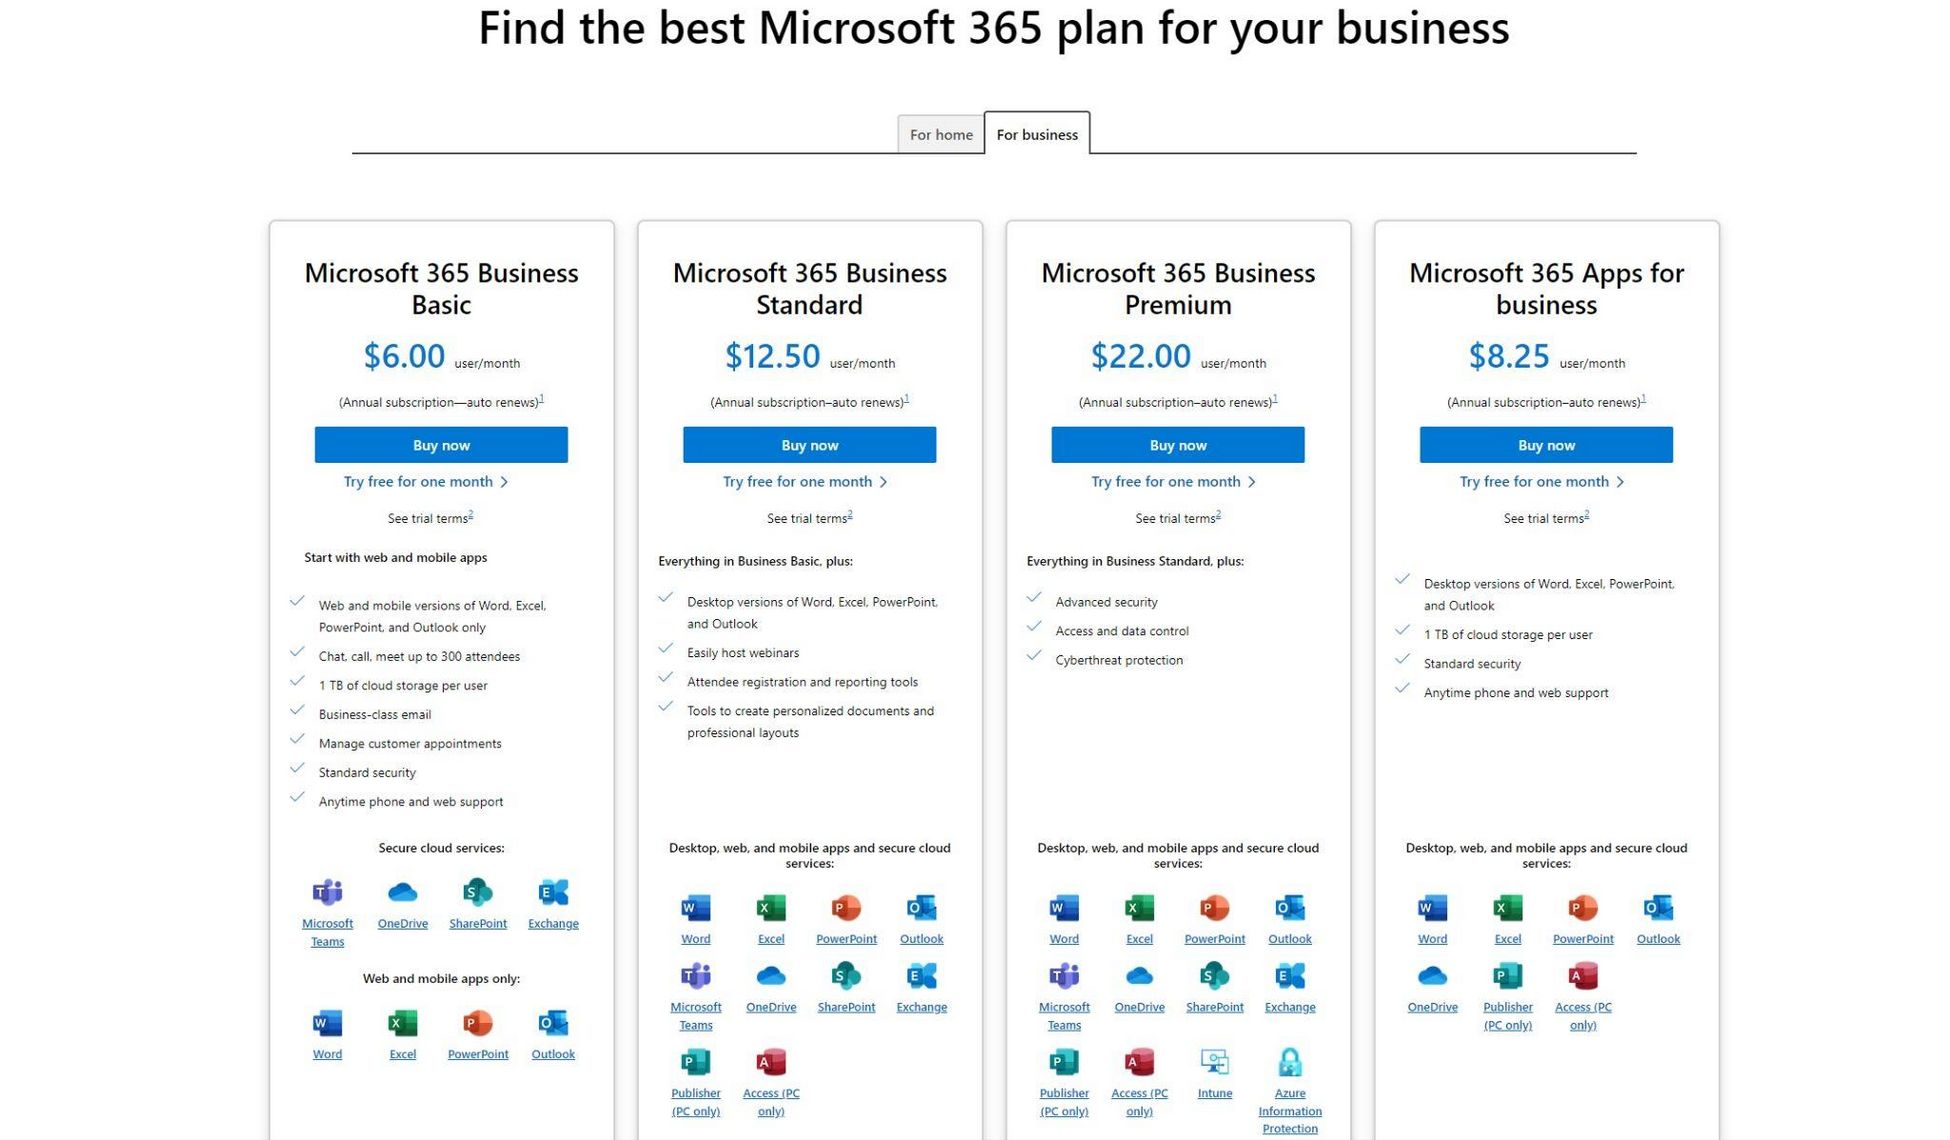 Microsoft 365 per seat licensing